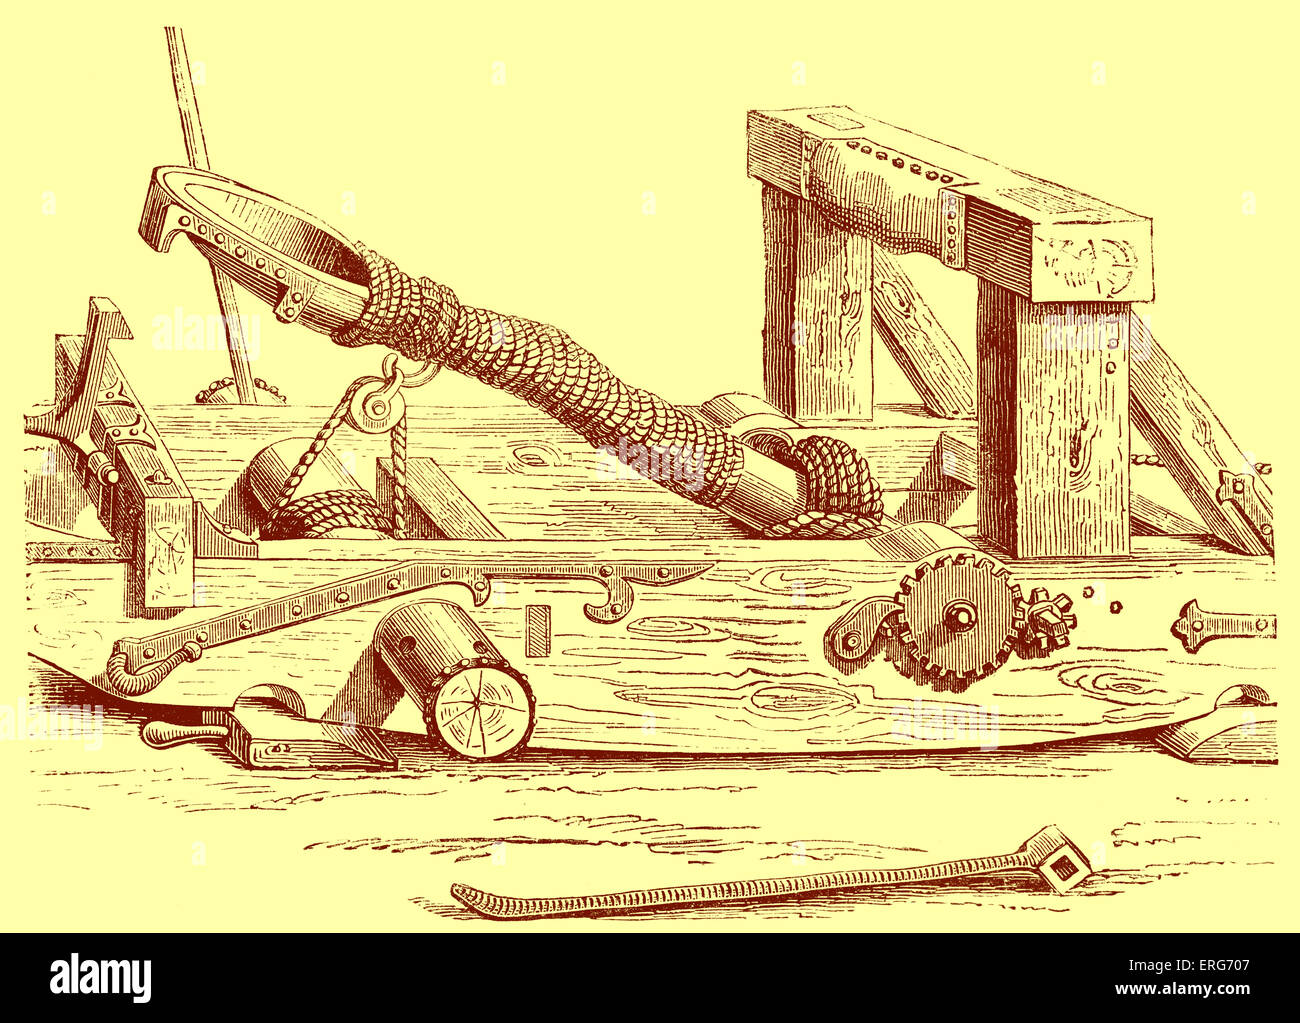 Mangonel, eine mittelalterliche Belagerungsmaschine verwendet, um Geschosse zu werfen. Stockfoto